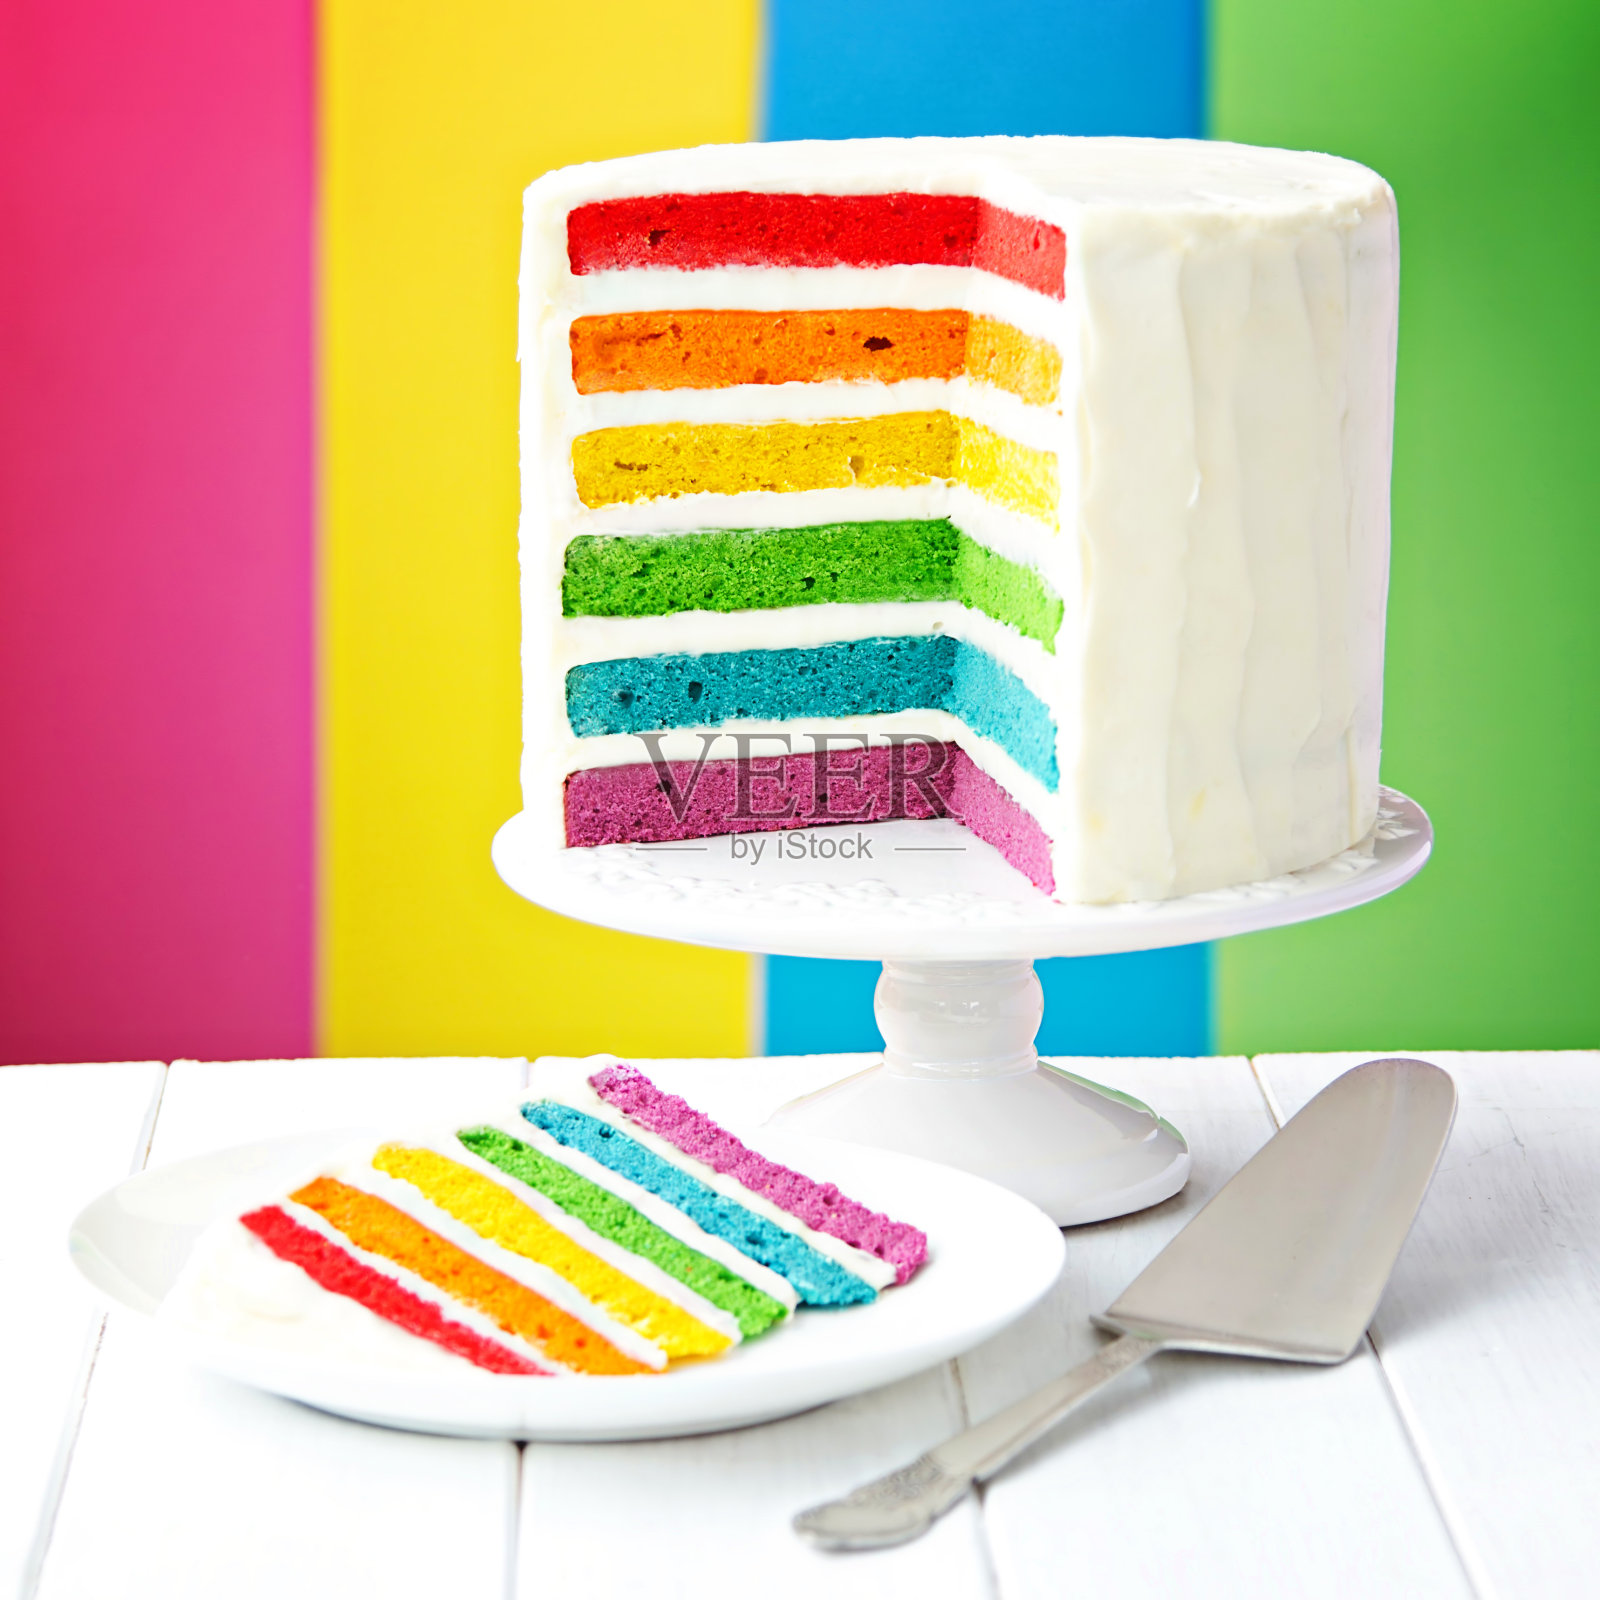 彩虹层蛋糕照片摄影图片